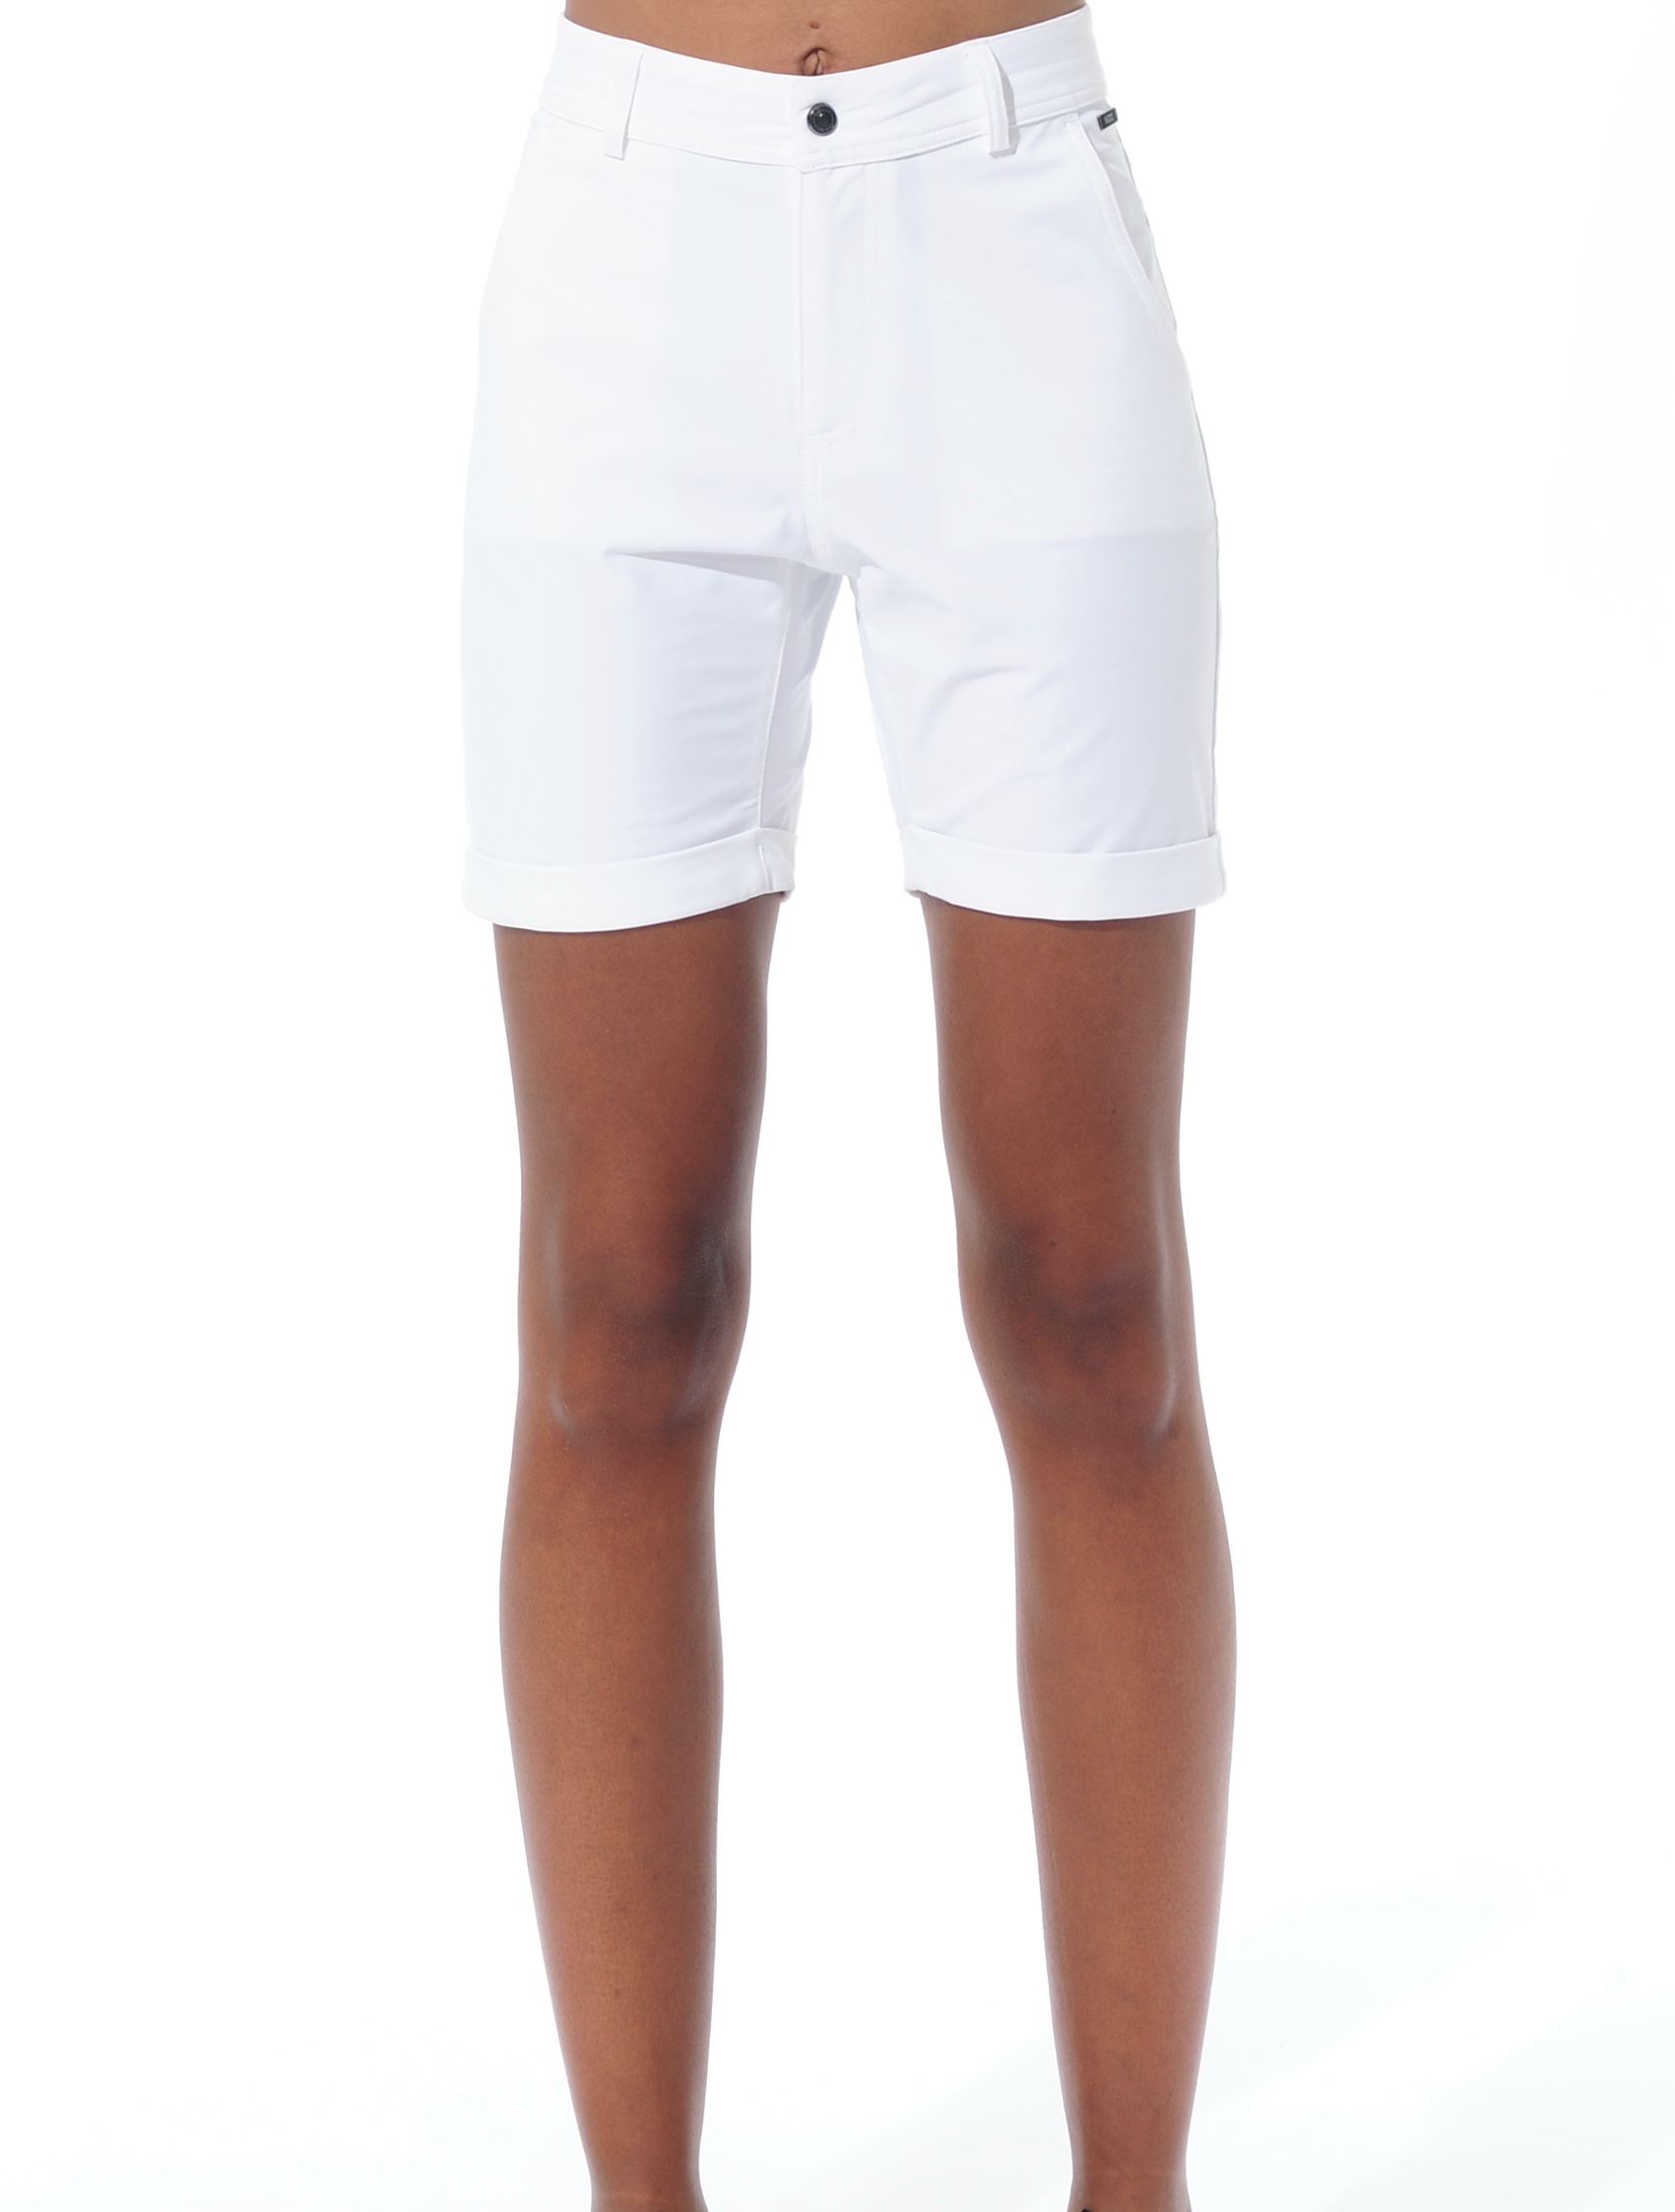 4way stretch shorts white 